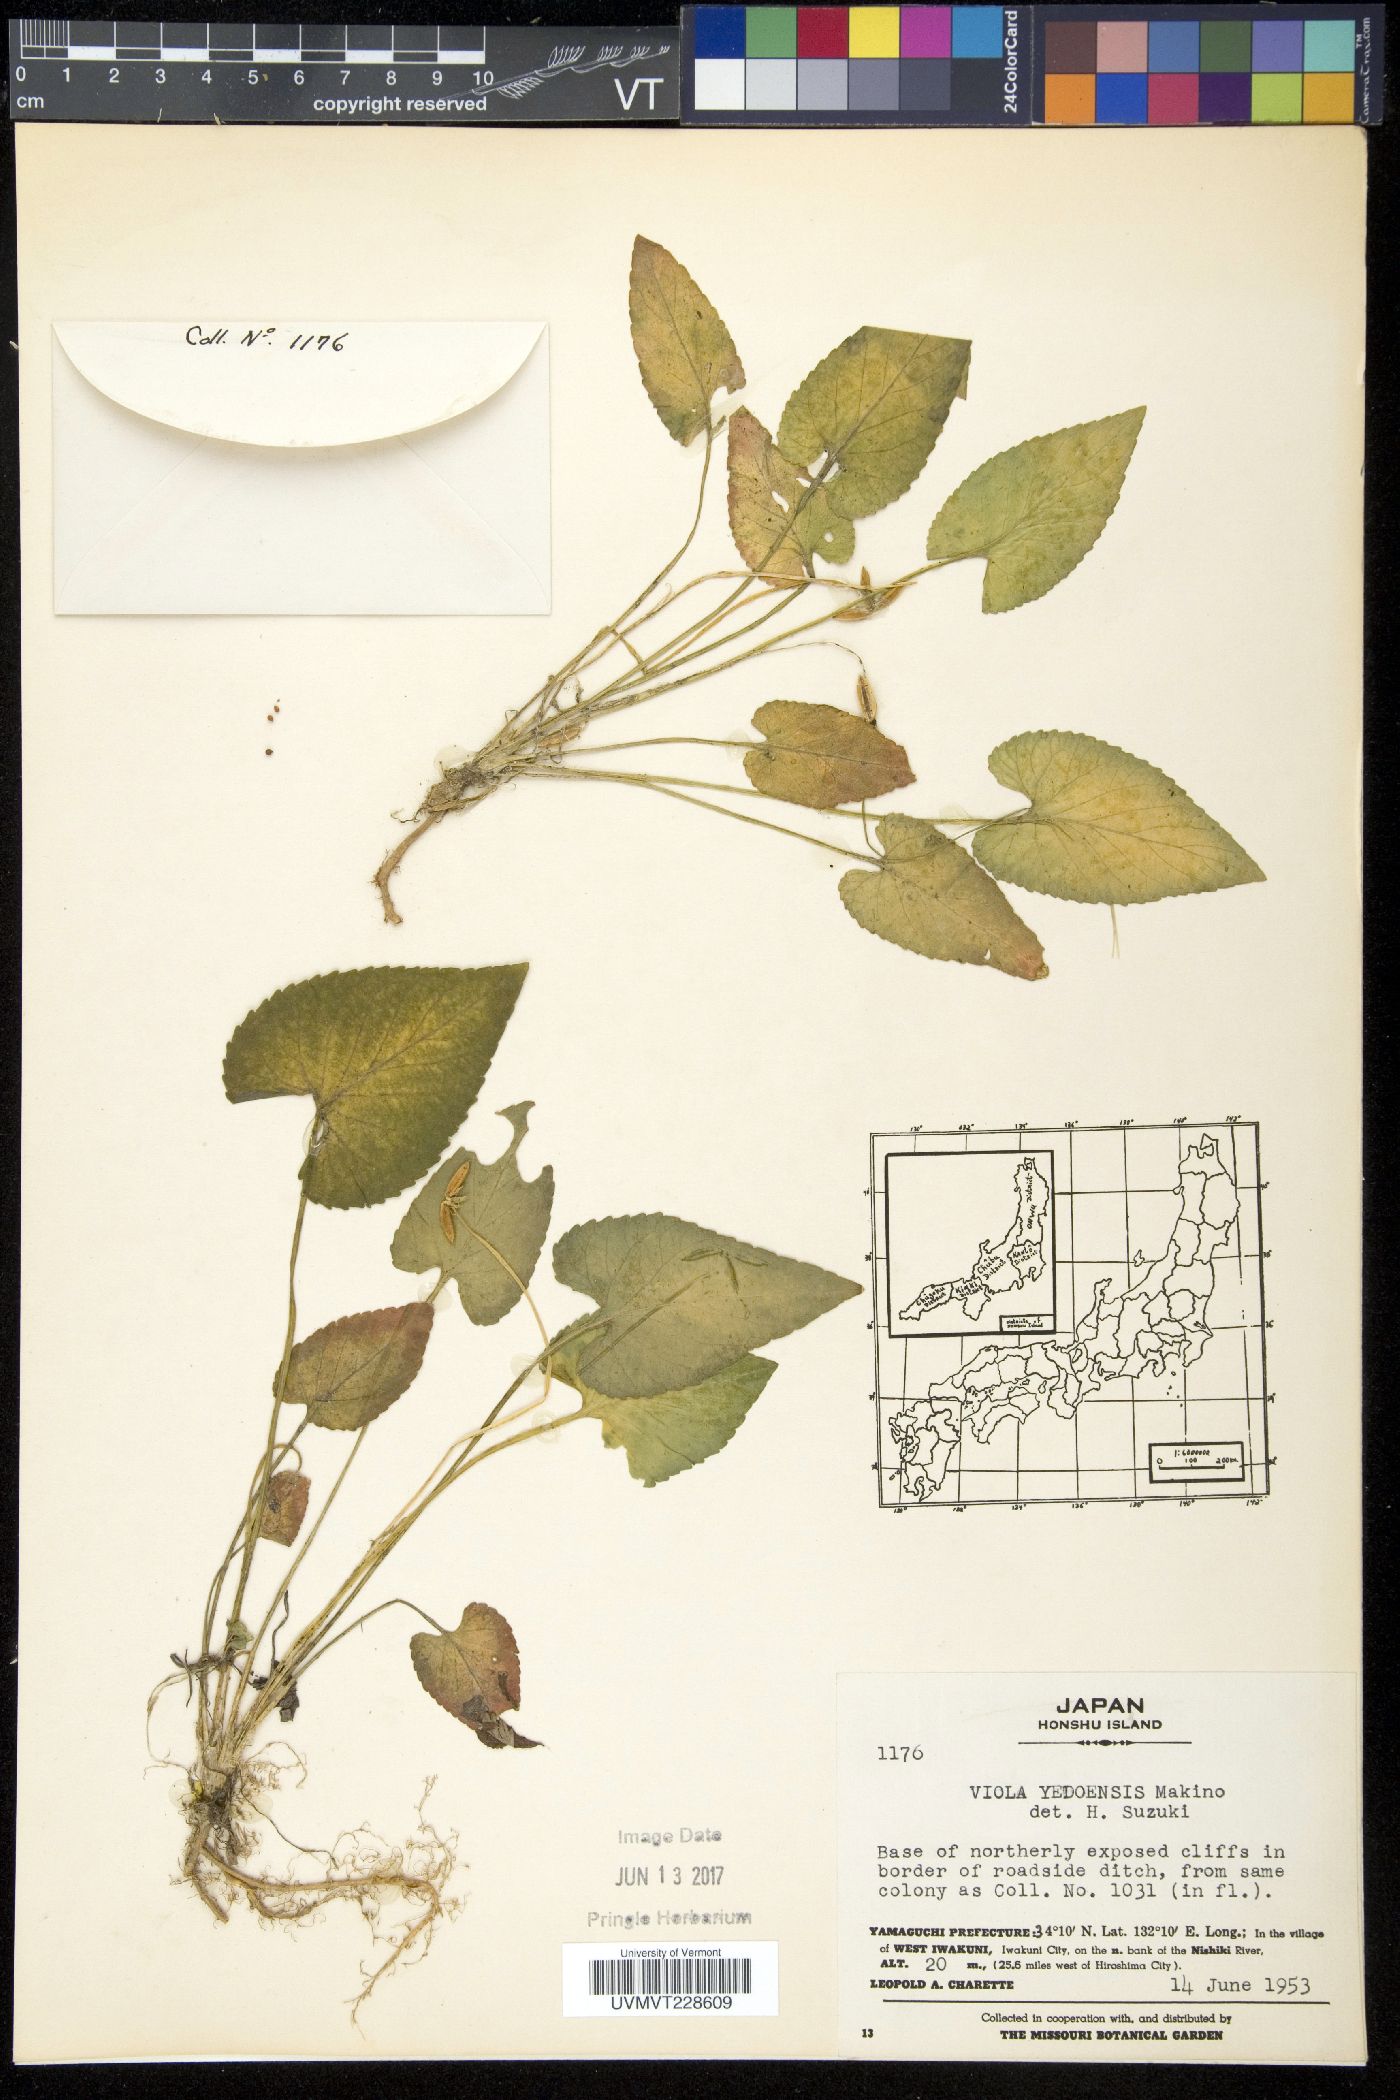 Viola yedoensis image